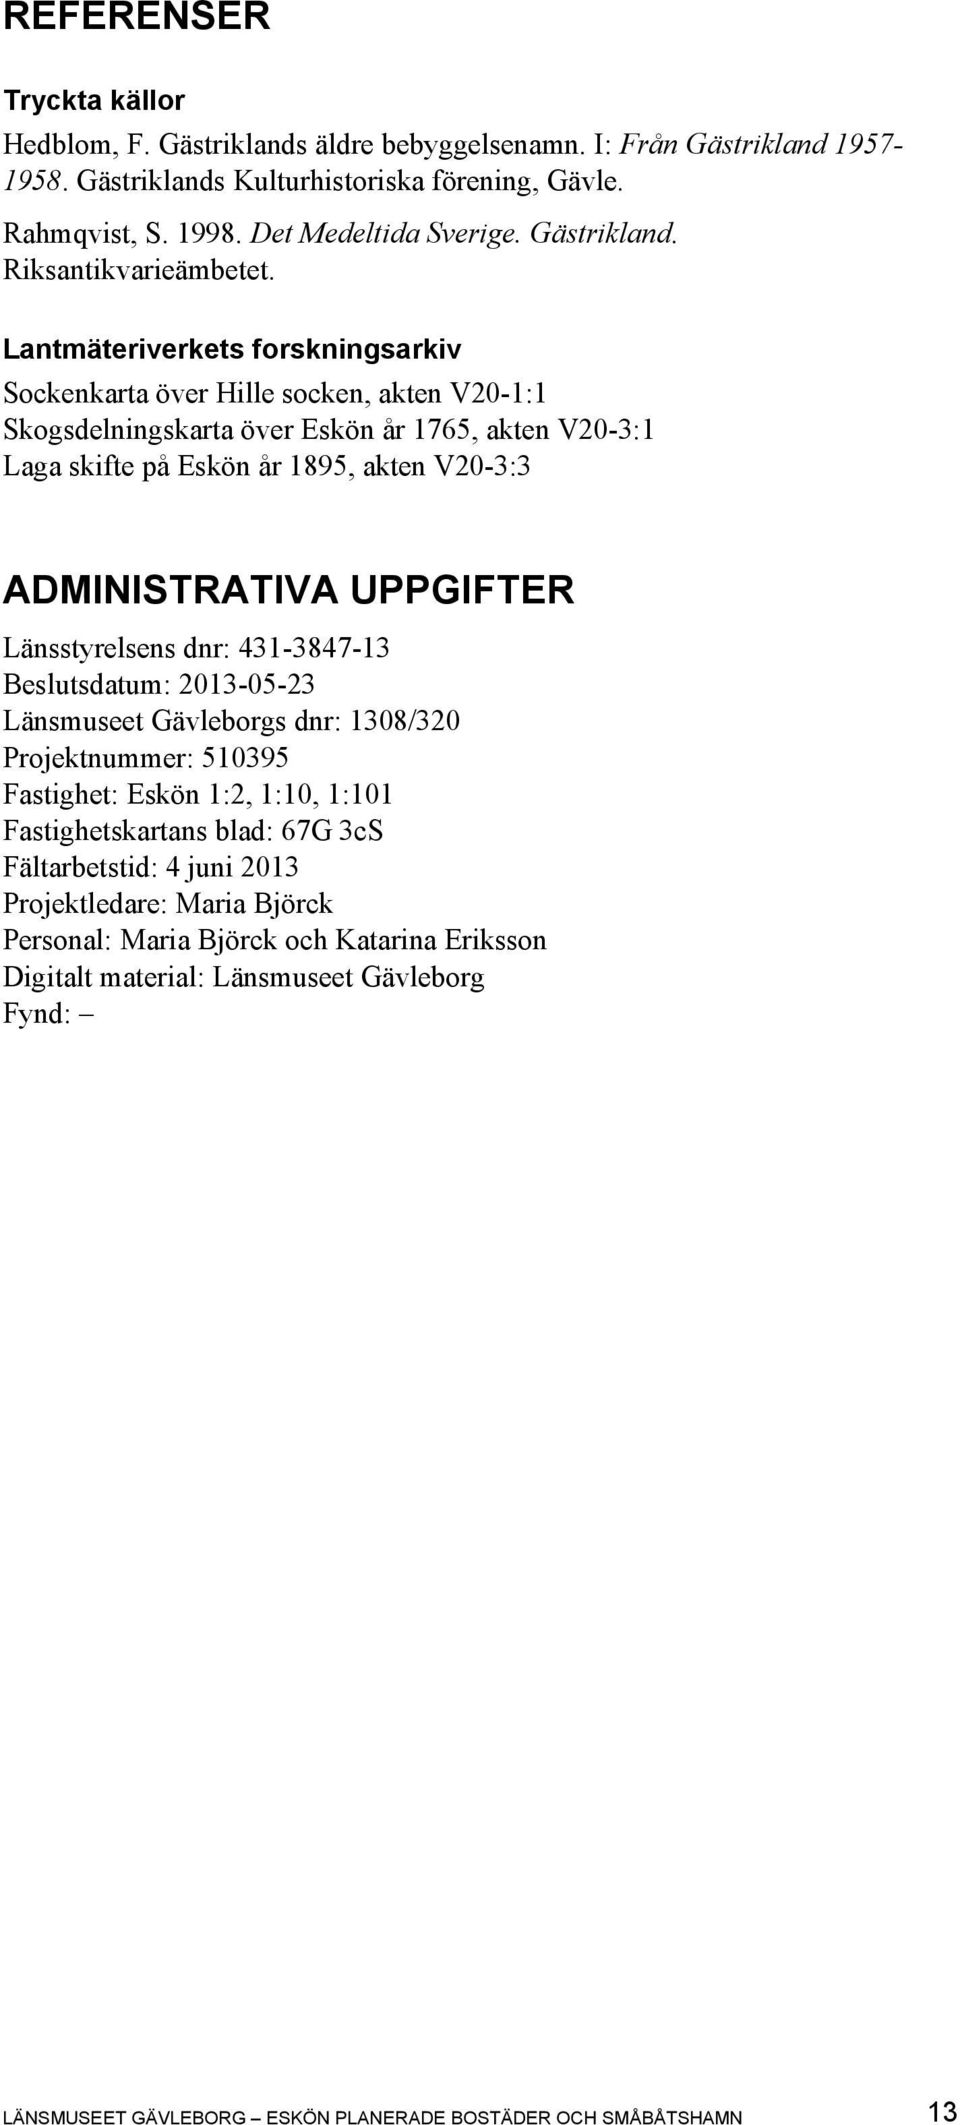 Lantmäteriverkets forskningsarkiv Sockenkarta över Hille socken, akten V20-1:1 Skogsdelningskarta över Eskön år 1765, akten V20-3:1 Laga skifte på Eskön år 1895, akten V20-3:3 ADMINISTRATIVA